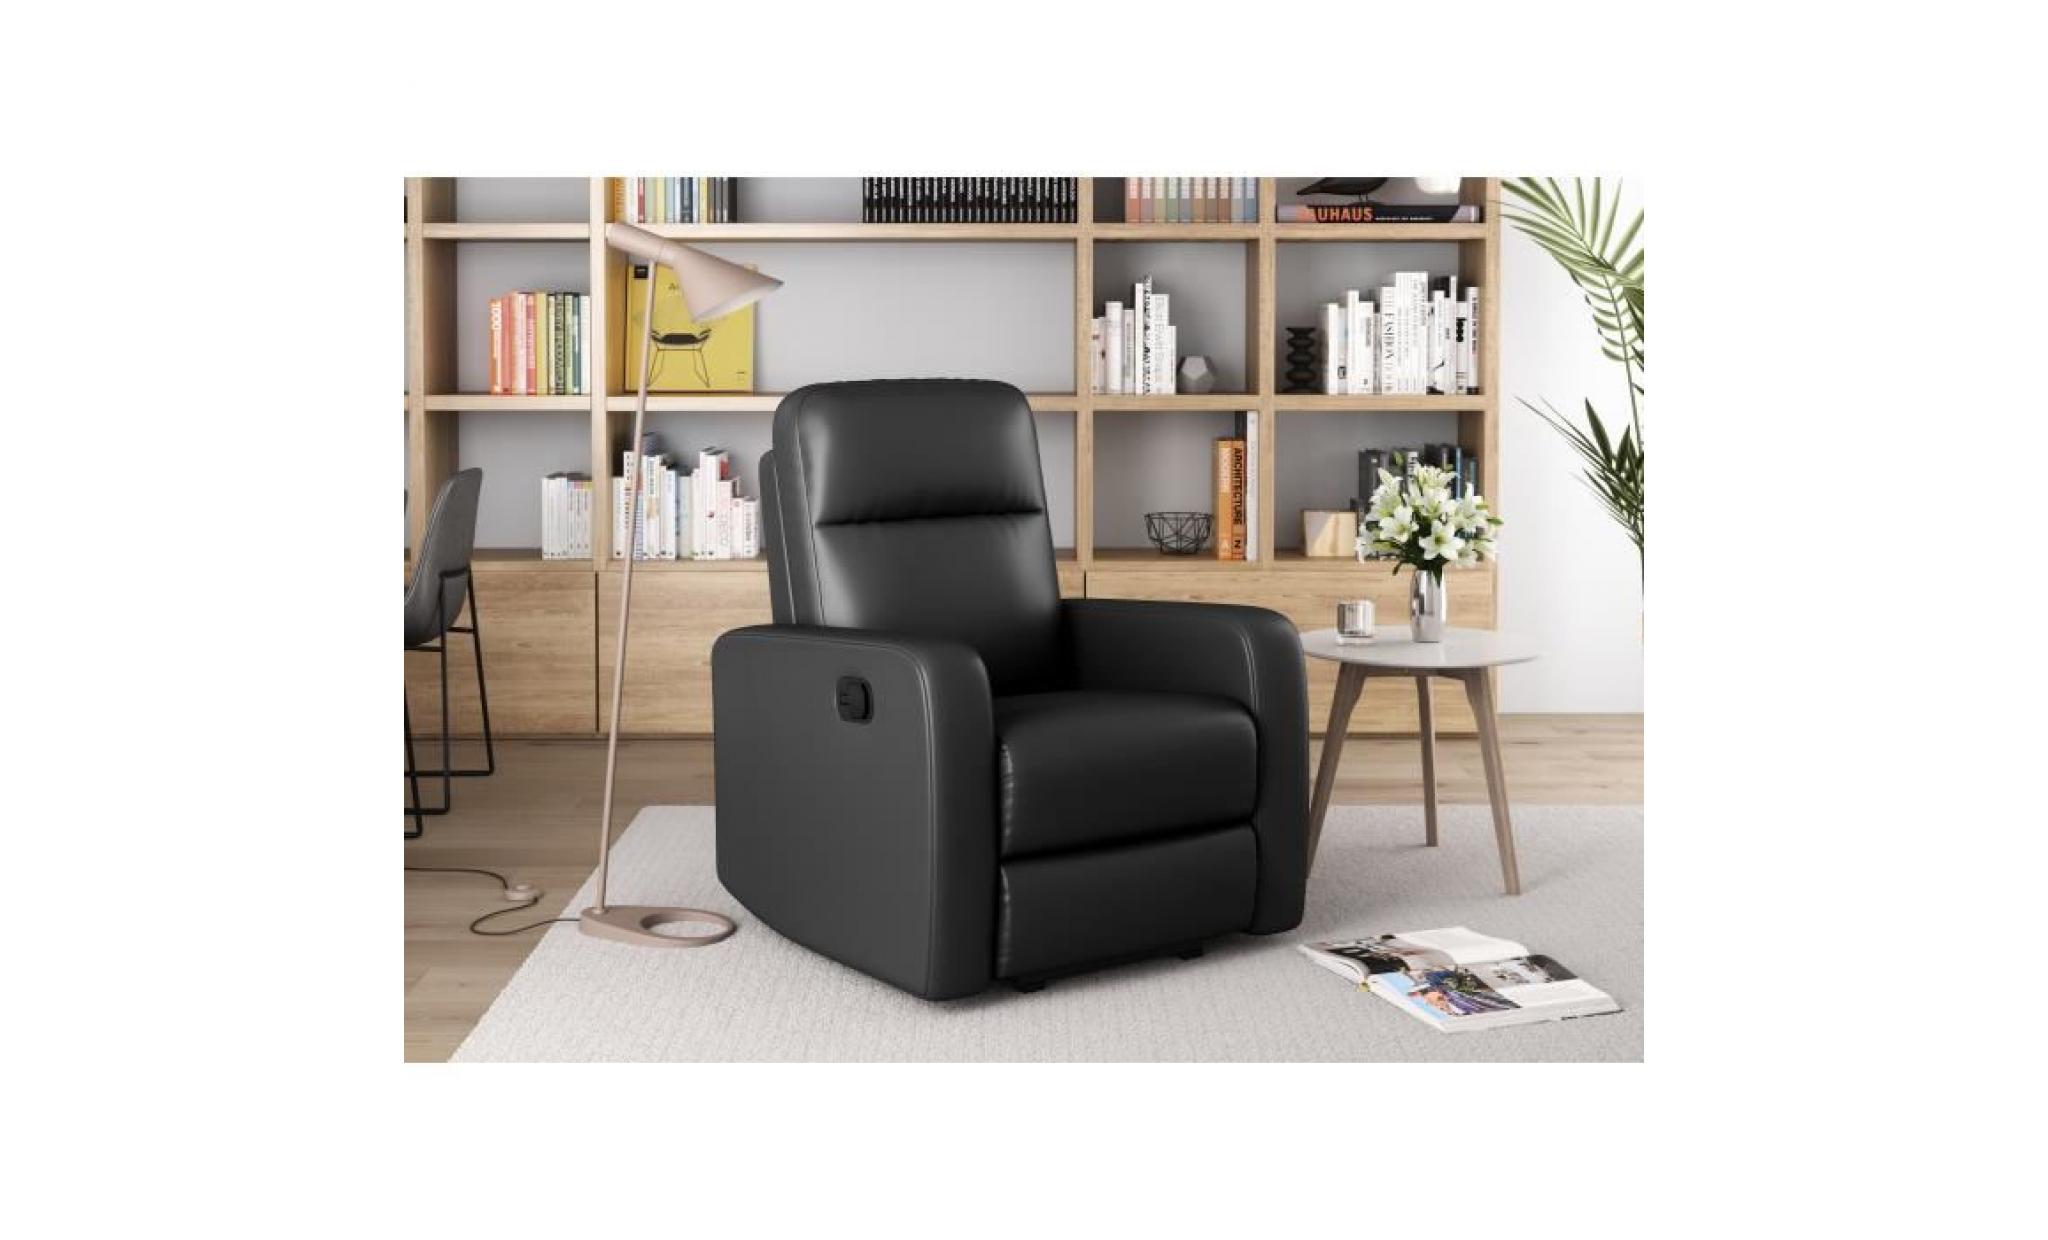 relax fauteuil de relaxation manuel   simili noir   classique   l 76 x p 88 cm pas cher